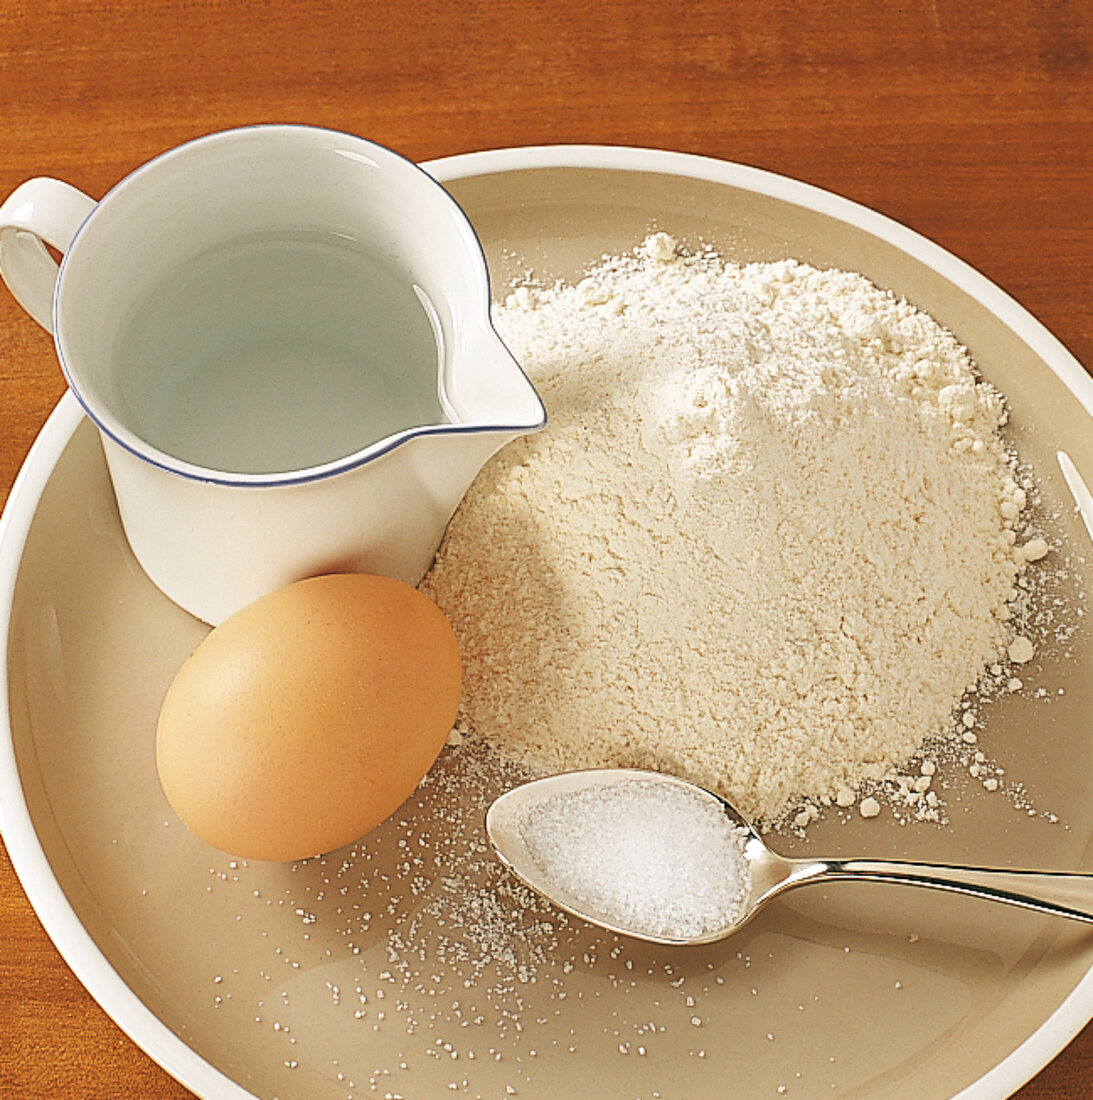 Schwäbisch kochen, Mehl, Salz, Ei und Kännchen mit Wasser